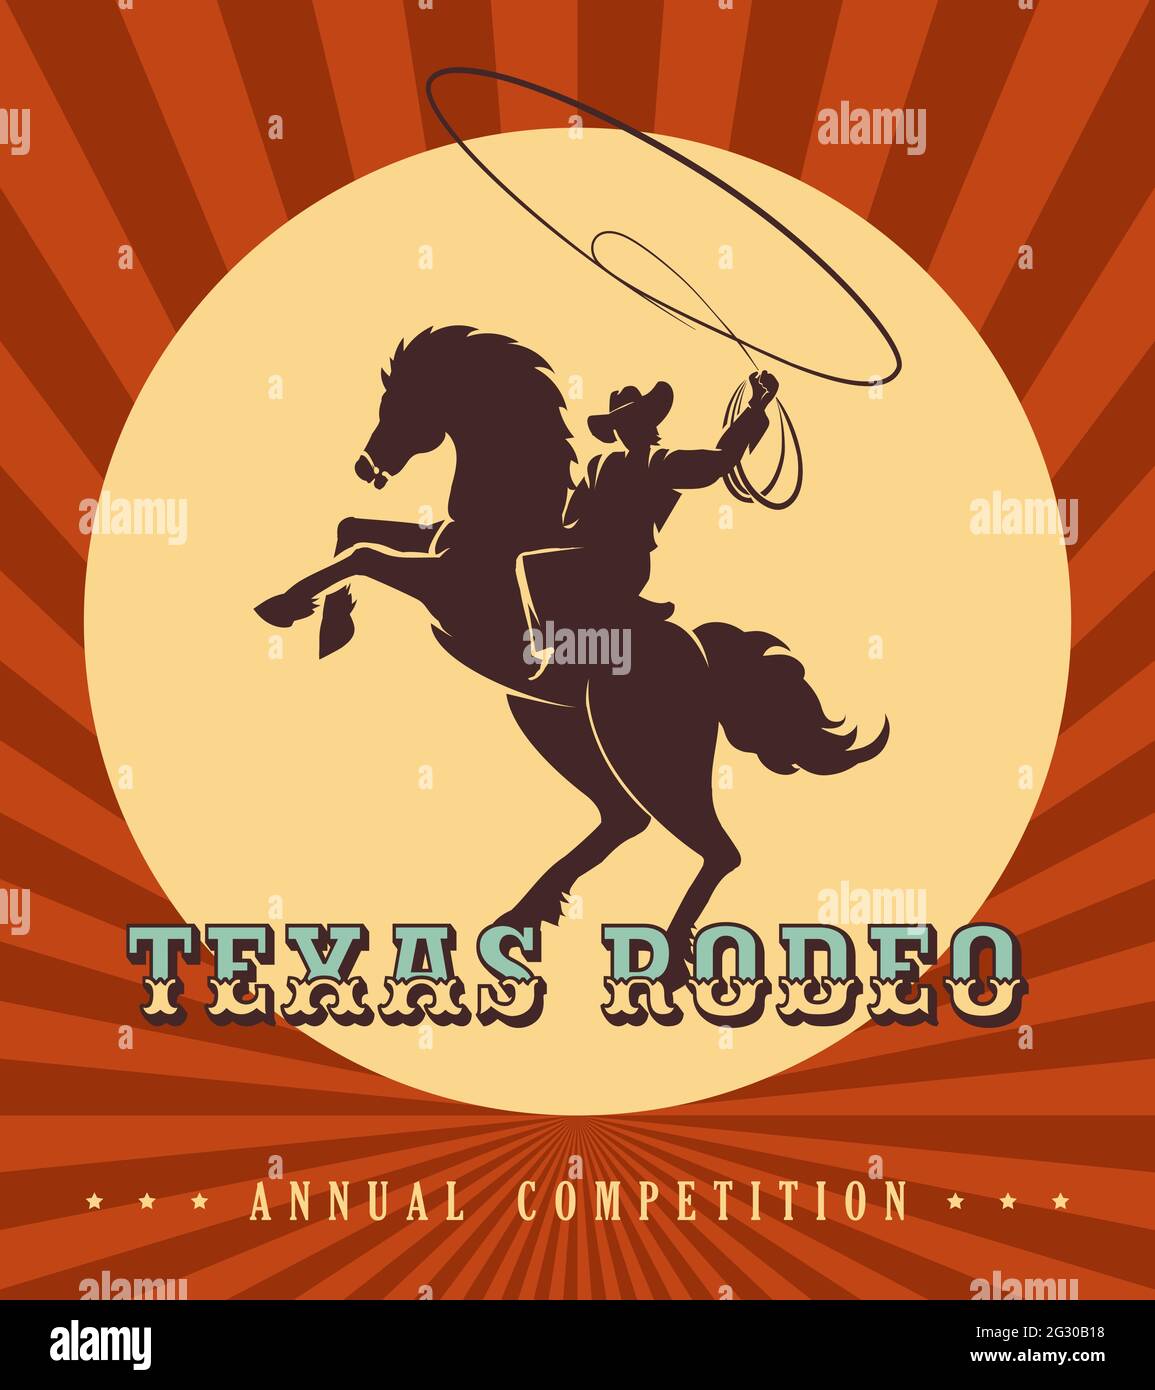 Affiche de rodéo vintage. Silhouette de cowboy avec tour de lasso un cheval sauvage. Illustration vectorielle. Illustration de Vecteur